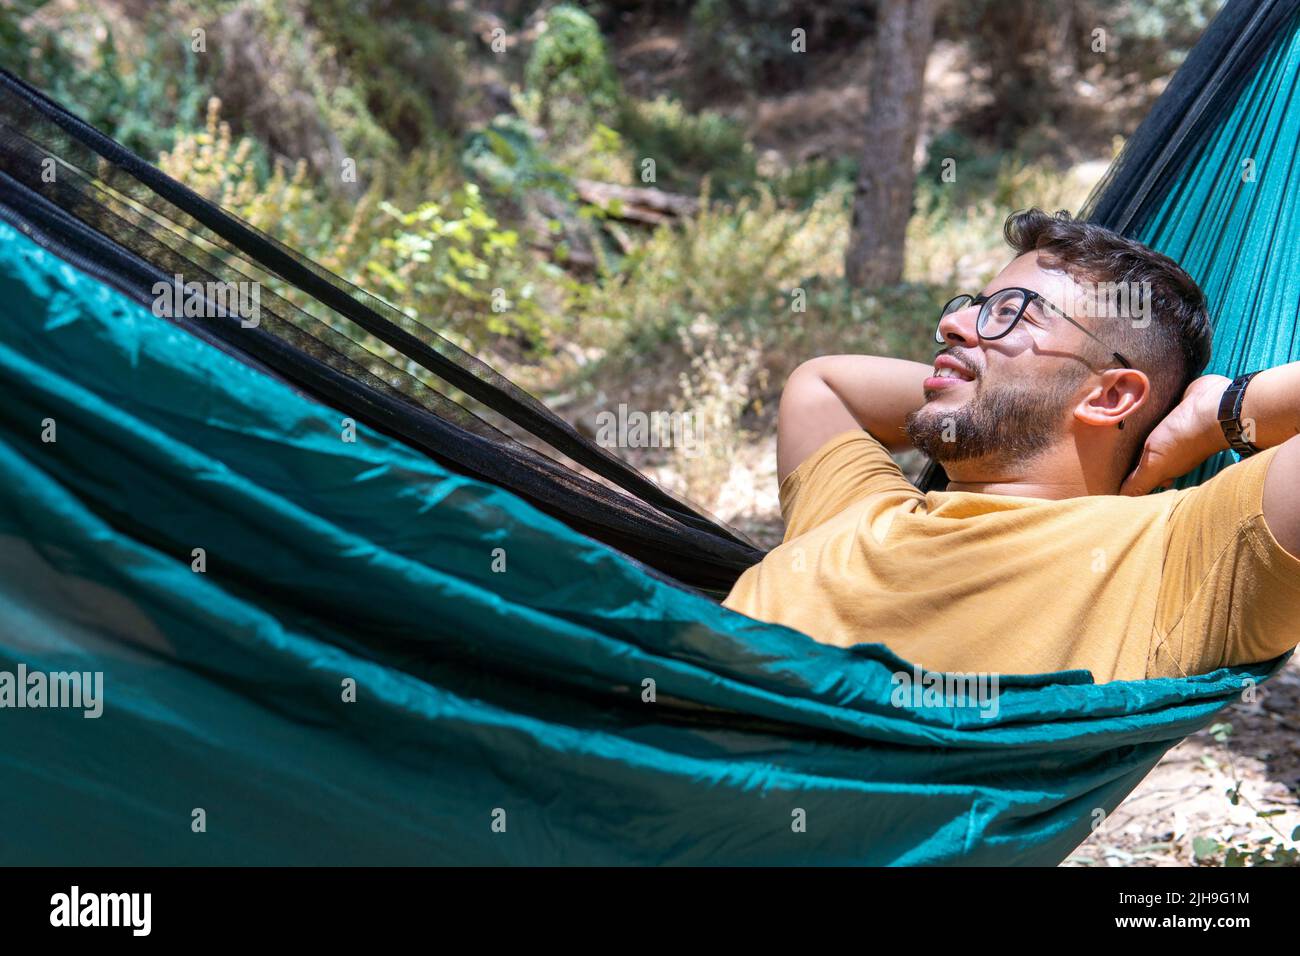 Nahaufnahme eines Mannes mit Brille und gelbem T-Shirt, der in einer grünen Hängematte liegt und die Natur im Wald genießt Stockfoto